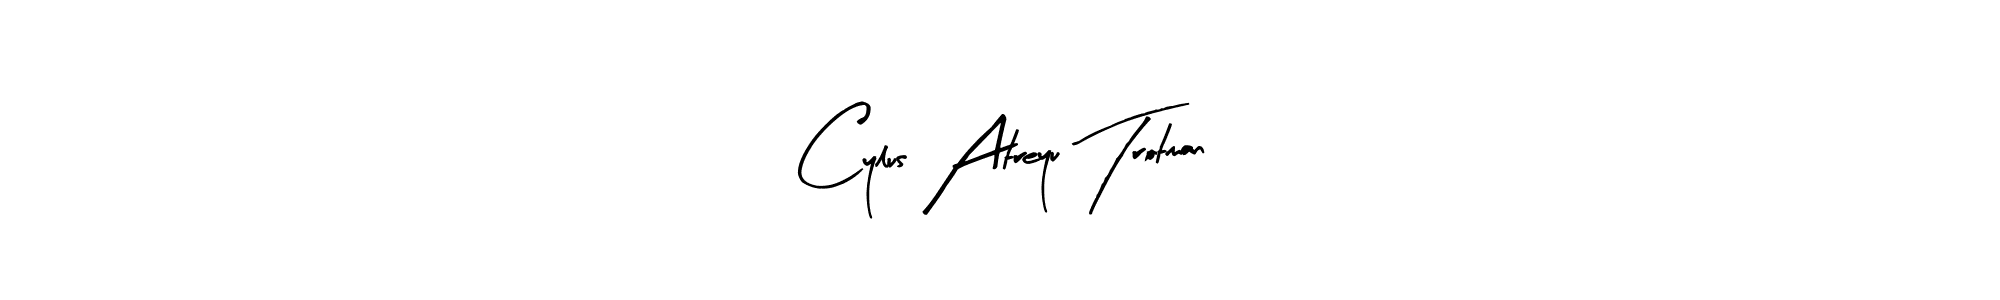 How to Draw Cylus Atreyu Trotman signature style? Arty Signature is a latest design signature styles for name Cylus Atreyu Trotman. Cylus Atreyu Trotman signature style 8 images and pictures png